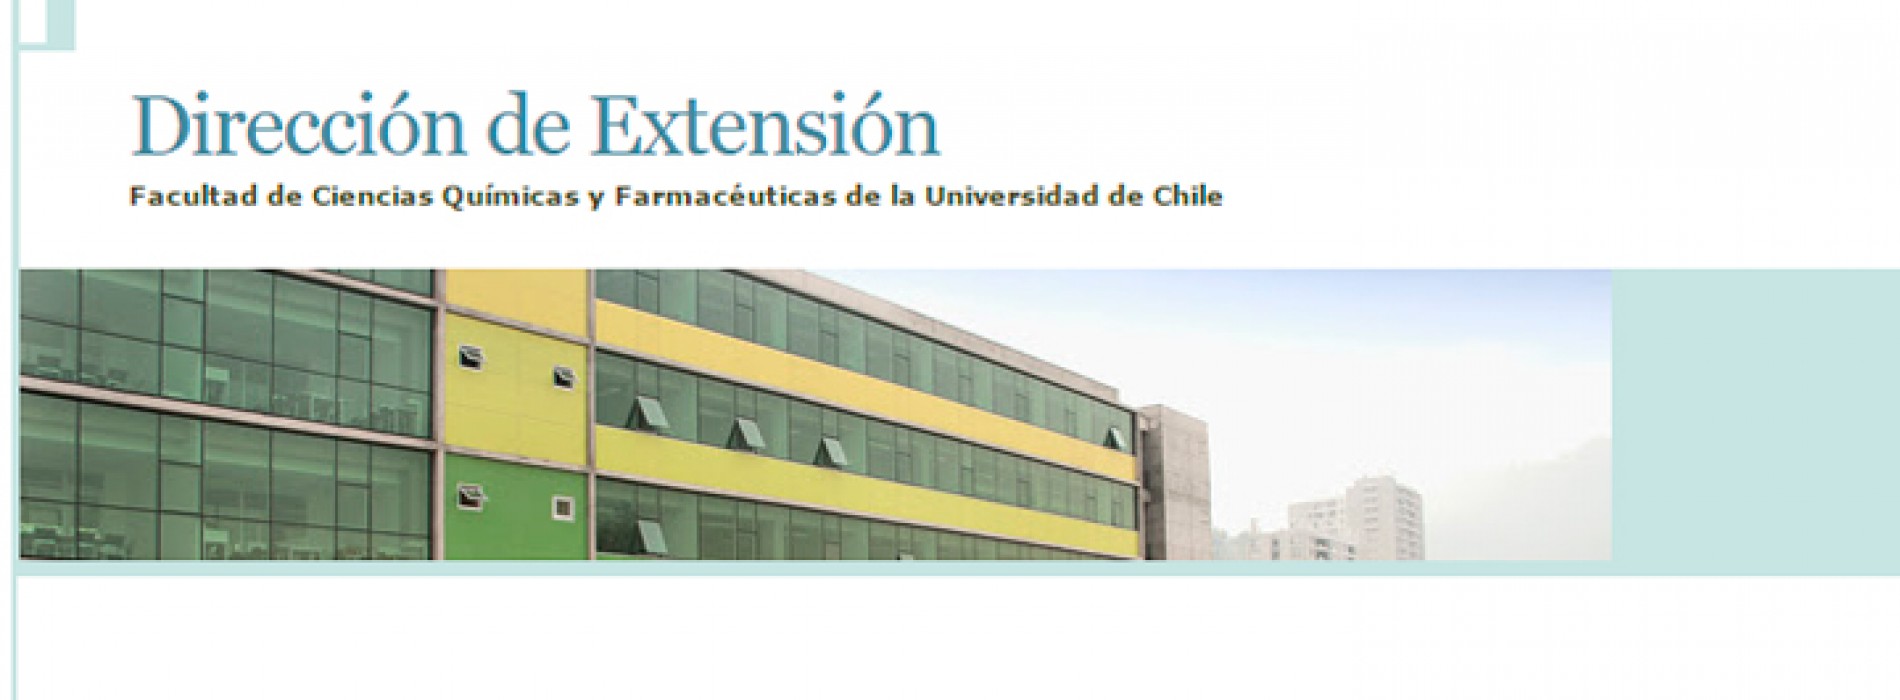 INVITACIÓN A CEREMONIA: “Innovación Curricular en la Facultad de Ciencias Químicas y Farmacéuticas”